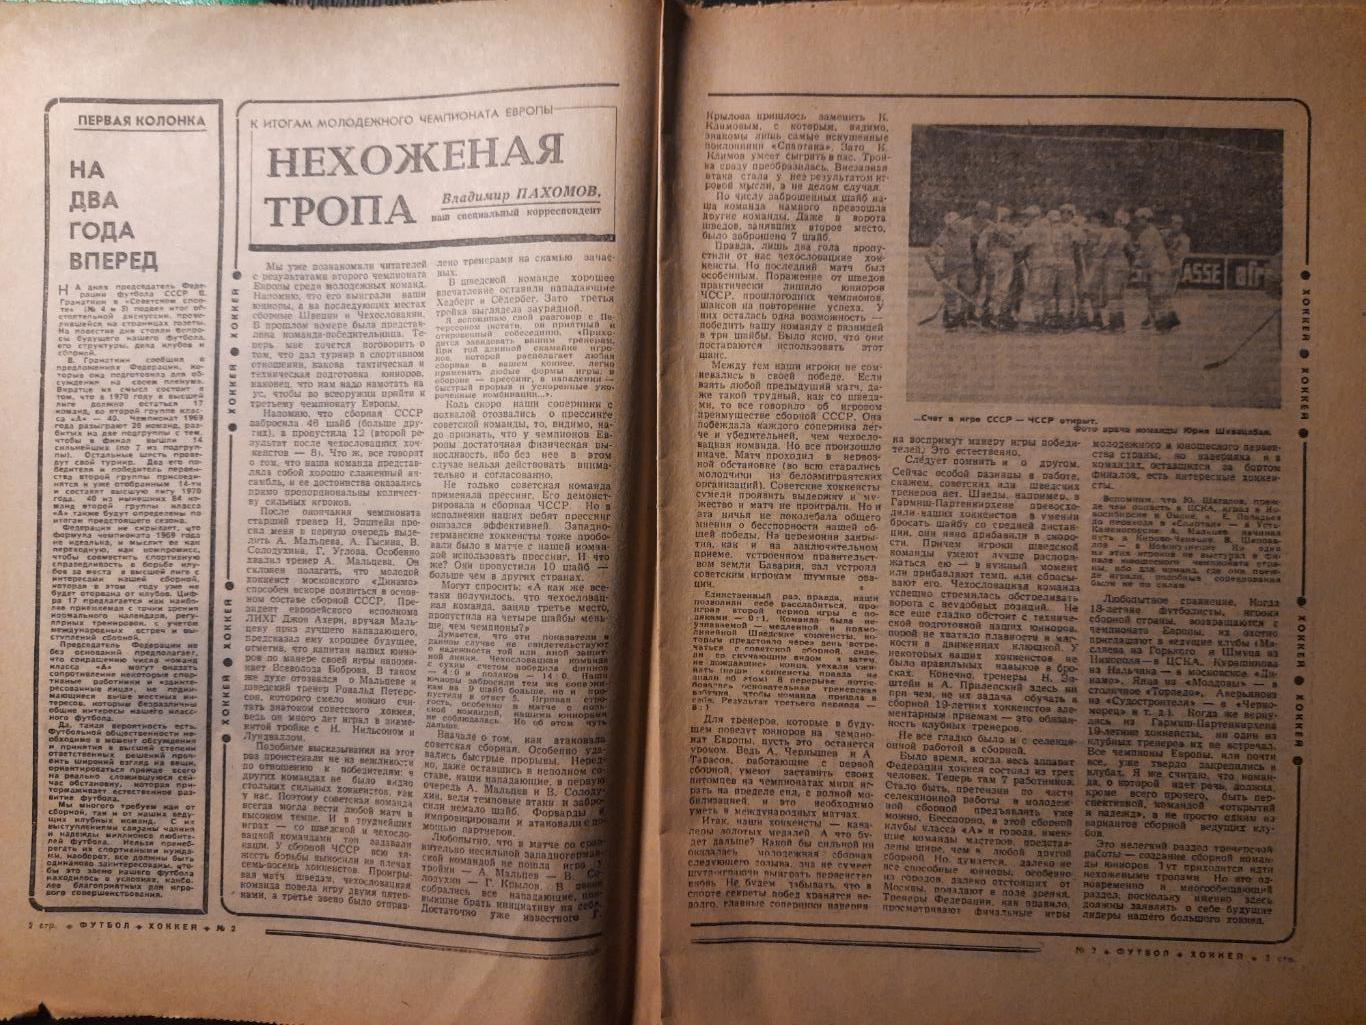 еженедельник футбол-хоккей #2,1969 1